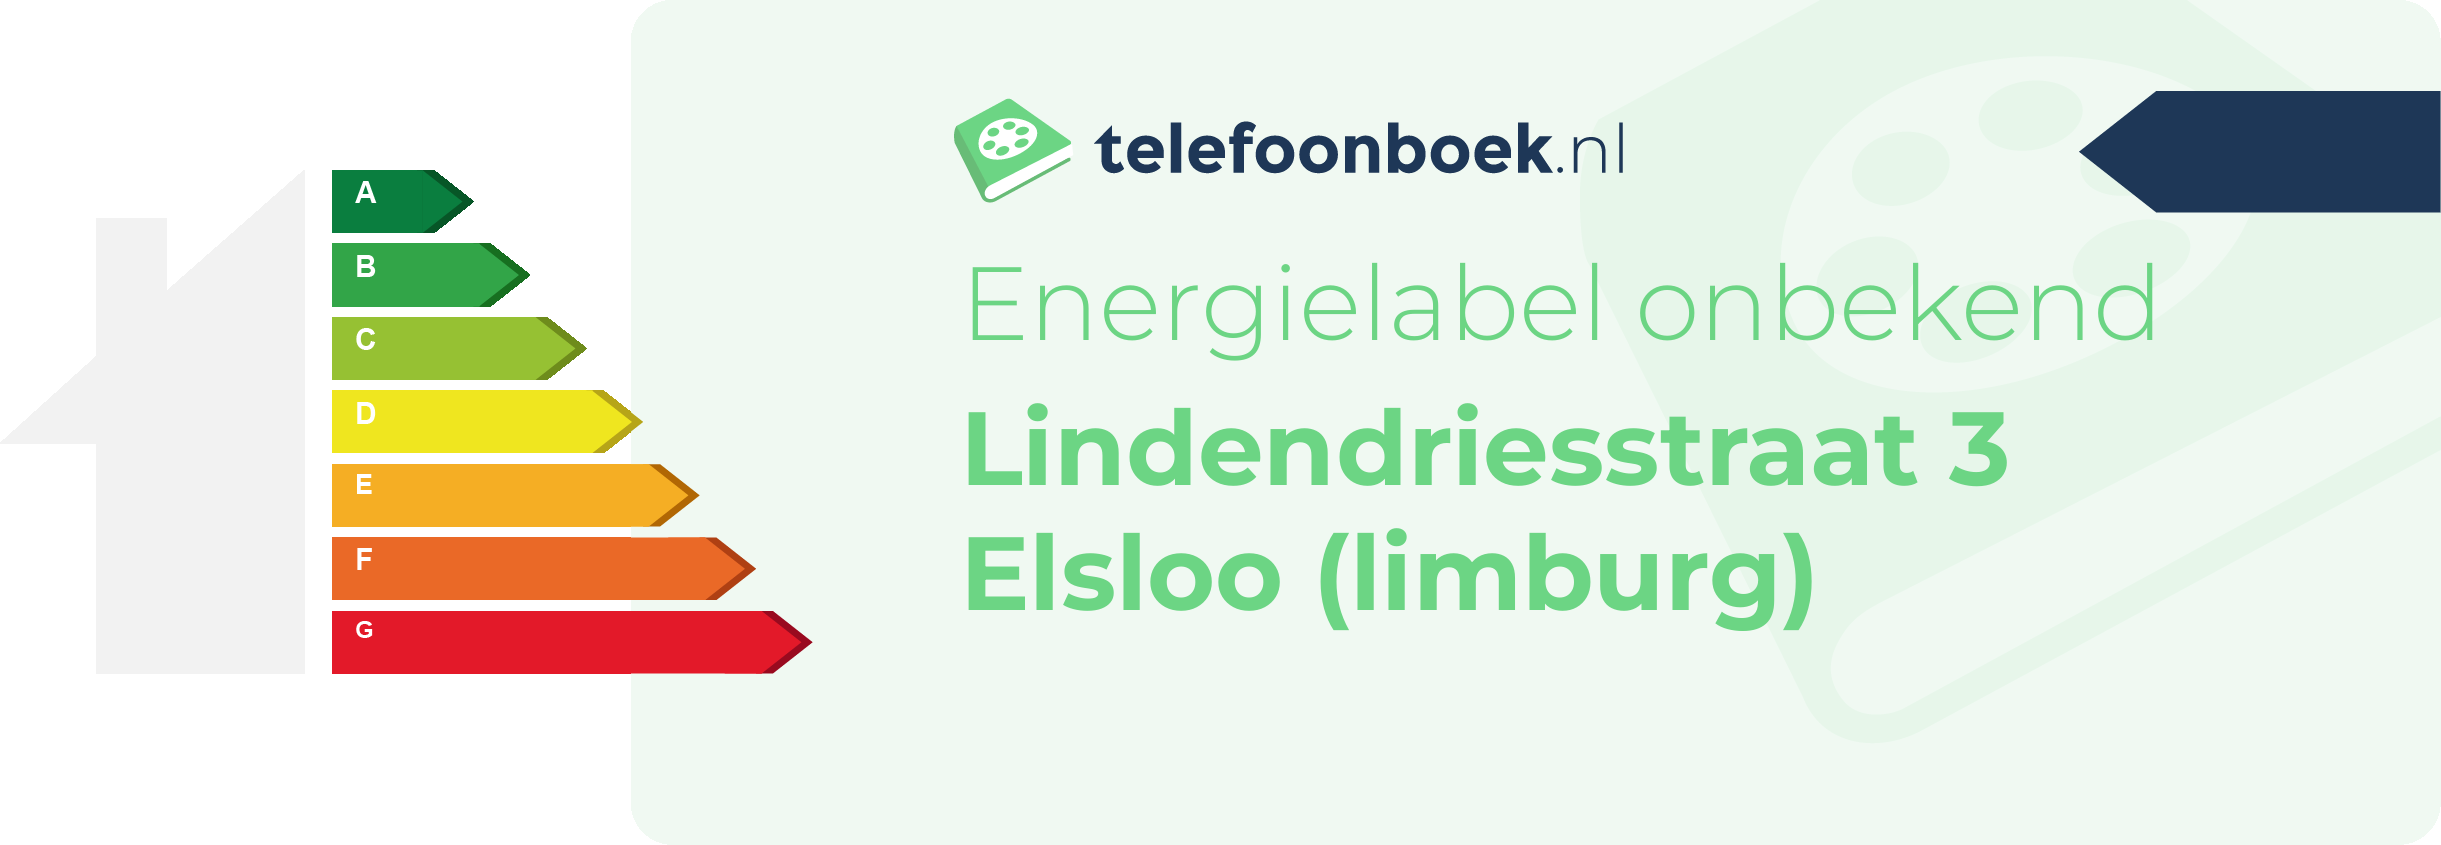 Energielabel Lindendriesstraat 3 Elsloo (Limburg)